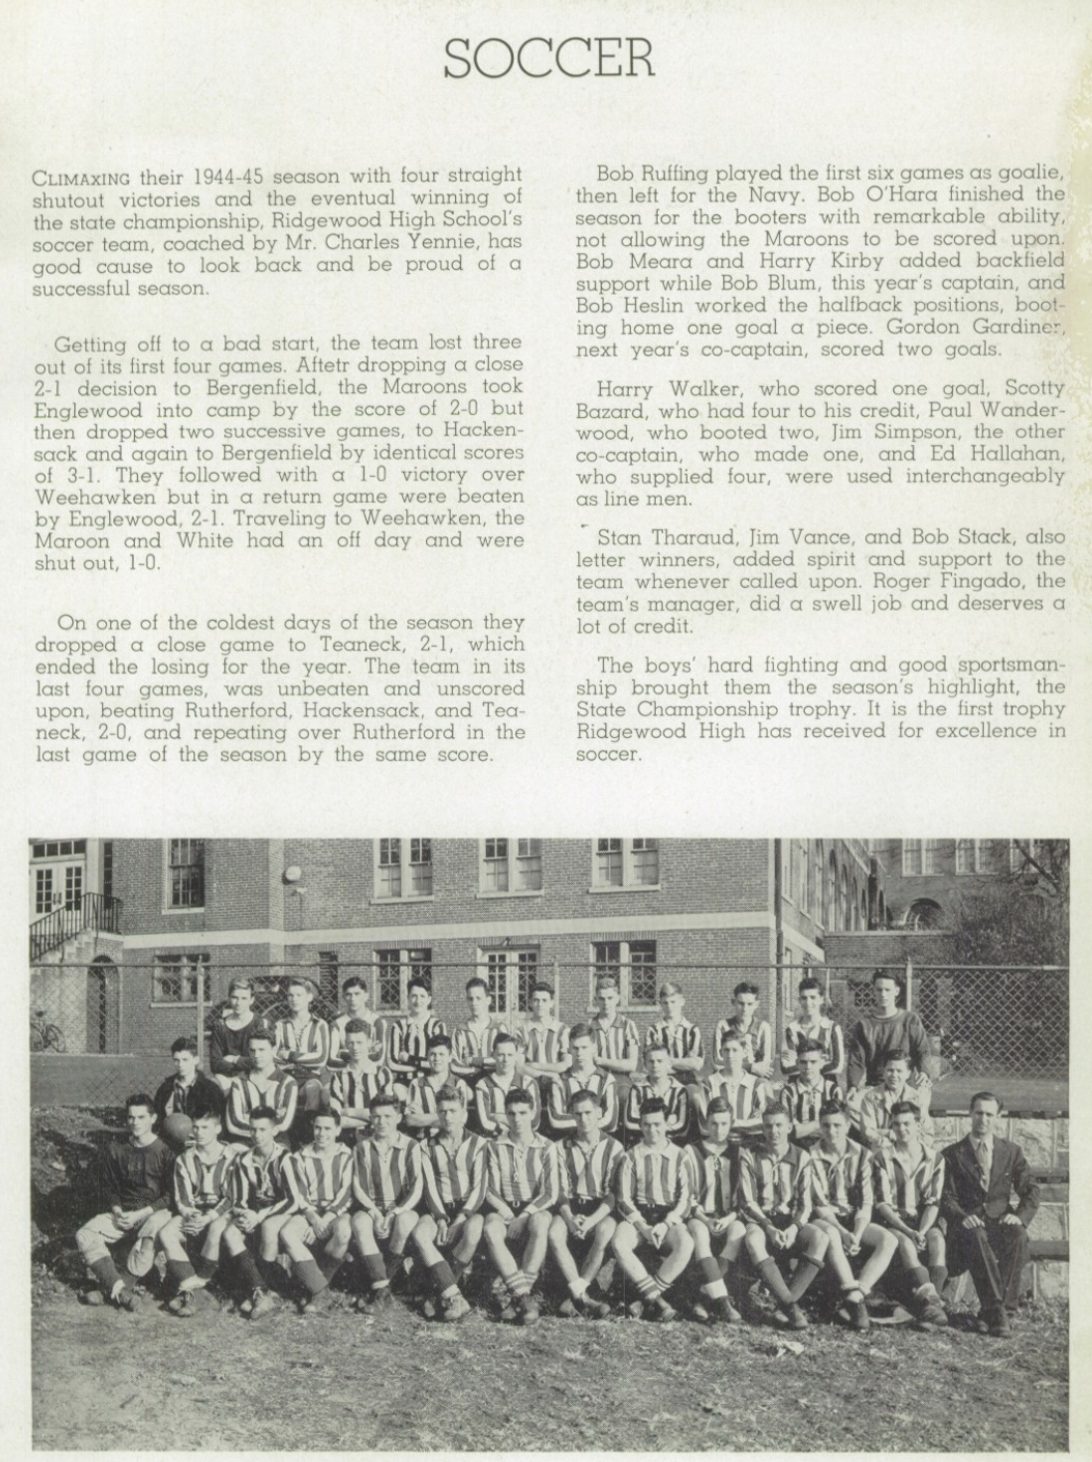 1944 Boys’ Soccer Team